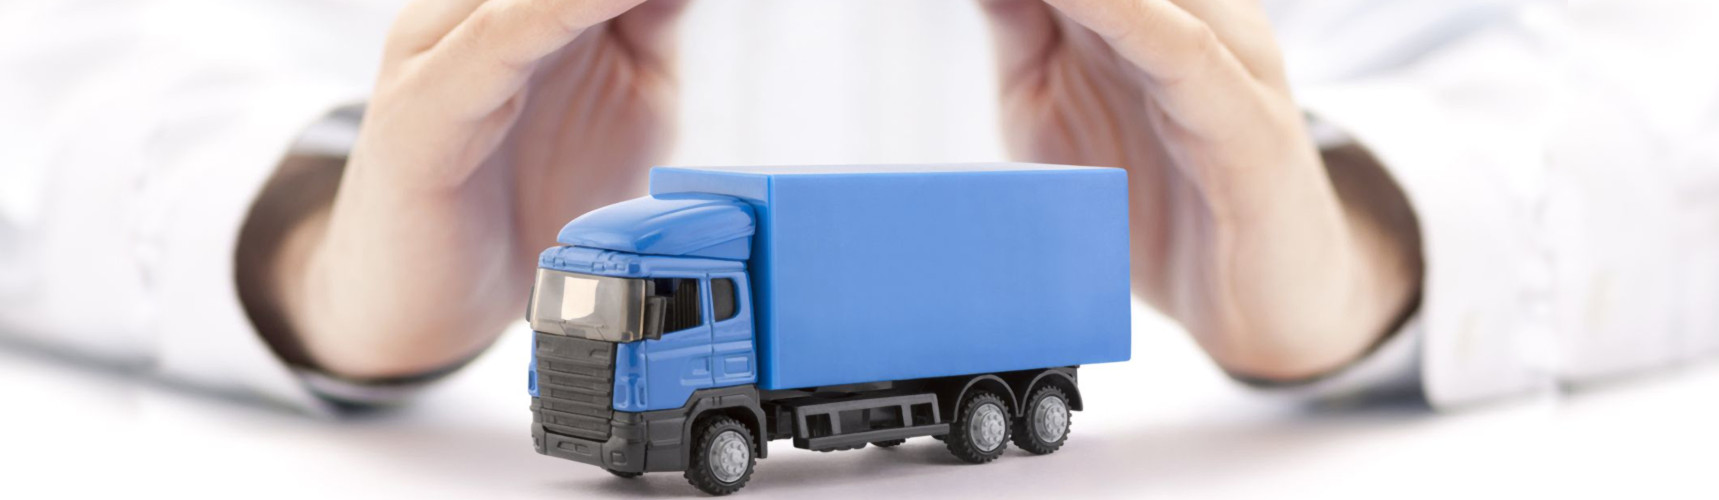 O que é rctr-c: duas mãos acima de um caminhão de brinquedo fazem sinal de proteção ao veículo